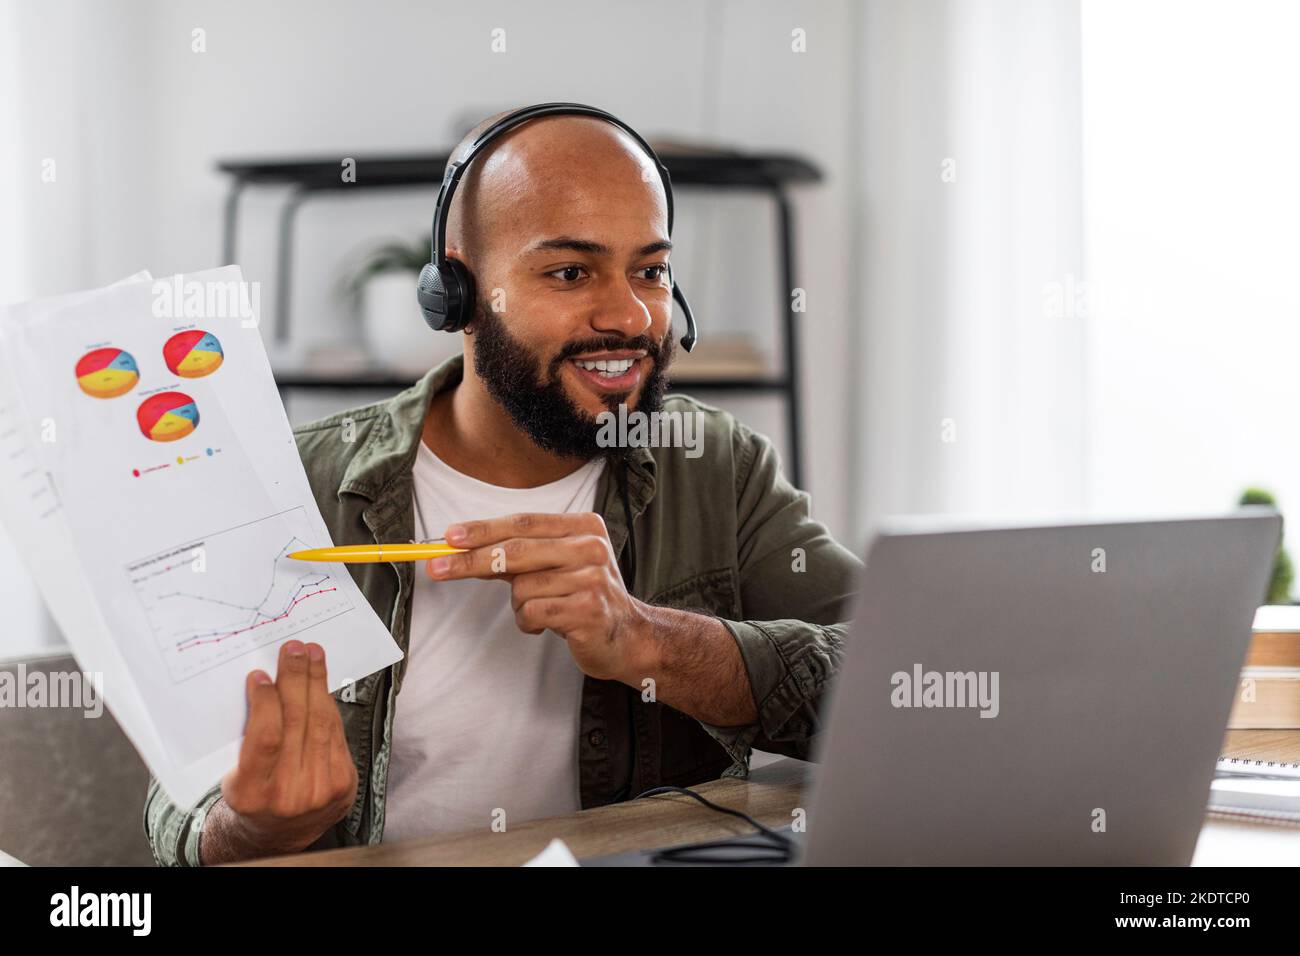 Homme latin mûr souriant dans un casque montrant des graphiques à la webcam d'ordinateur portable, assis au bureau à la maison, espace libre Banque D'Images